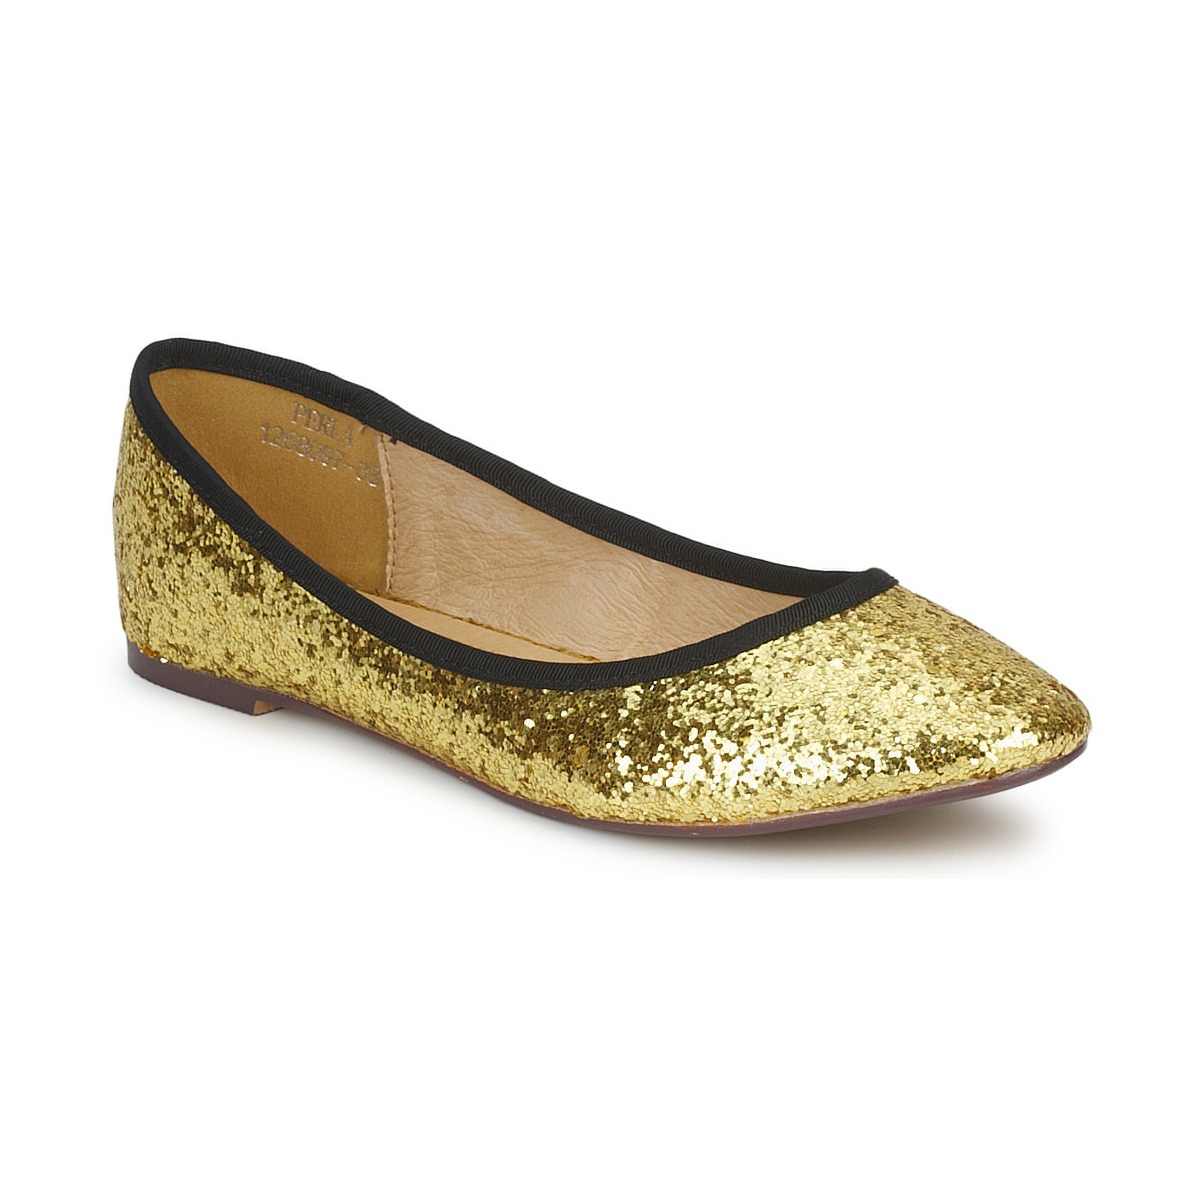 Čevlji  Ženske Balerinke Friis & Company PERLA Zlata